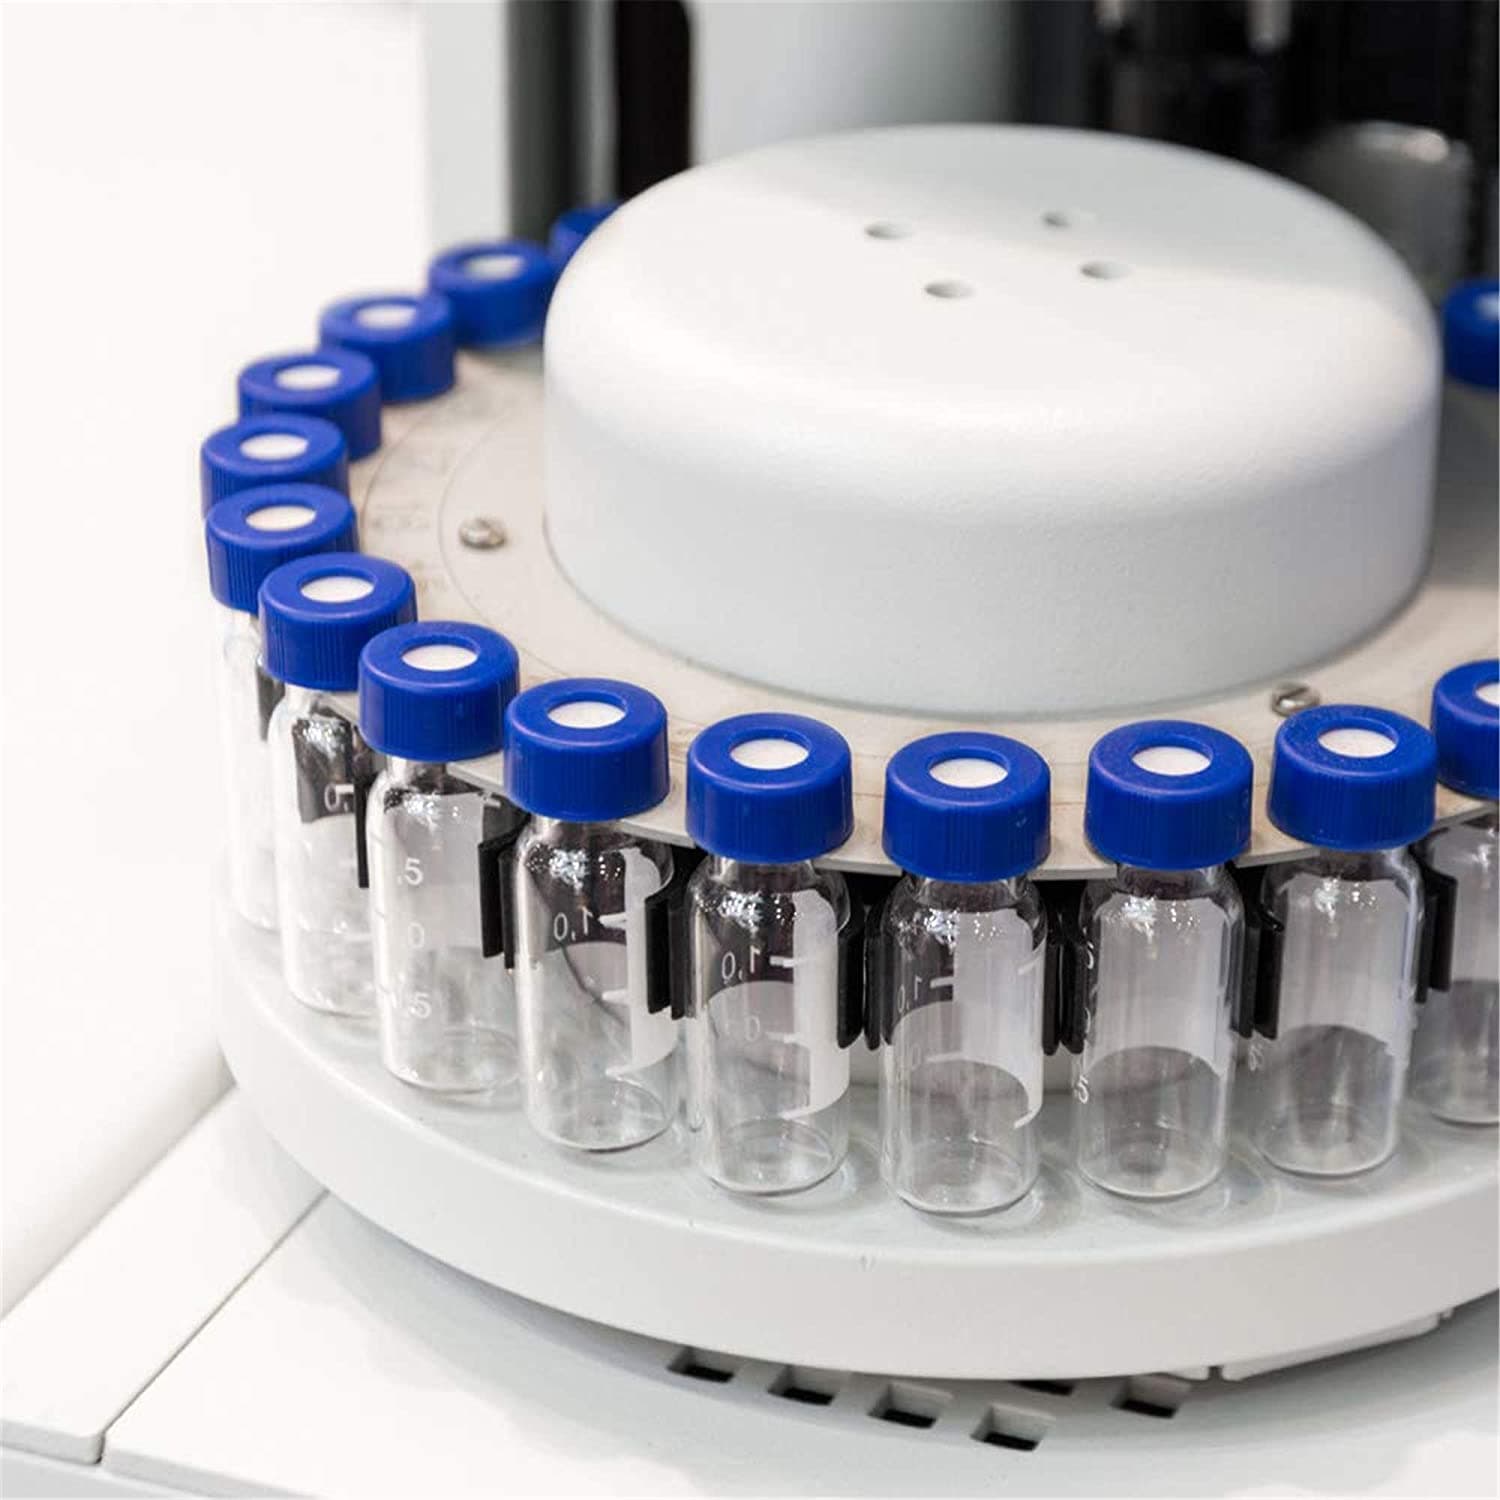 1.5ml screw chromatography vial supplier Amazon